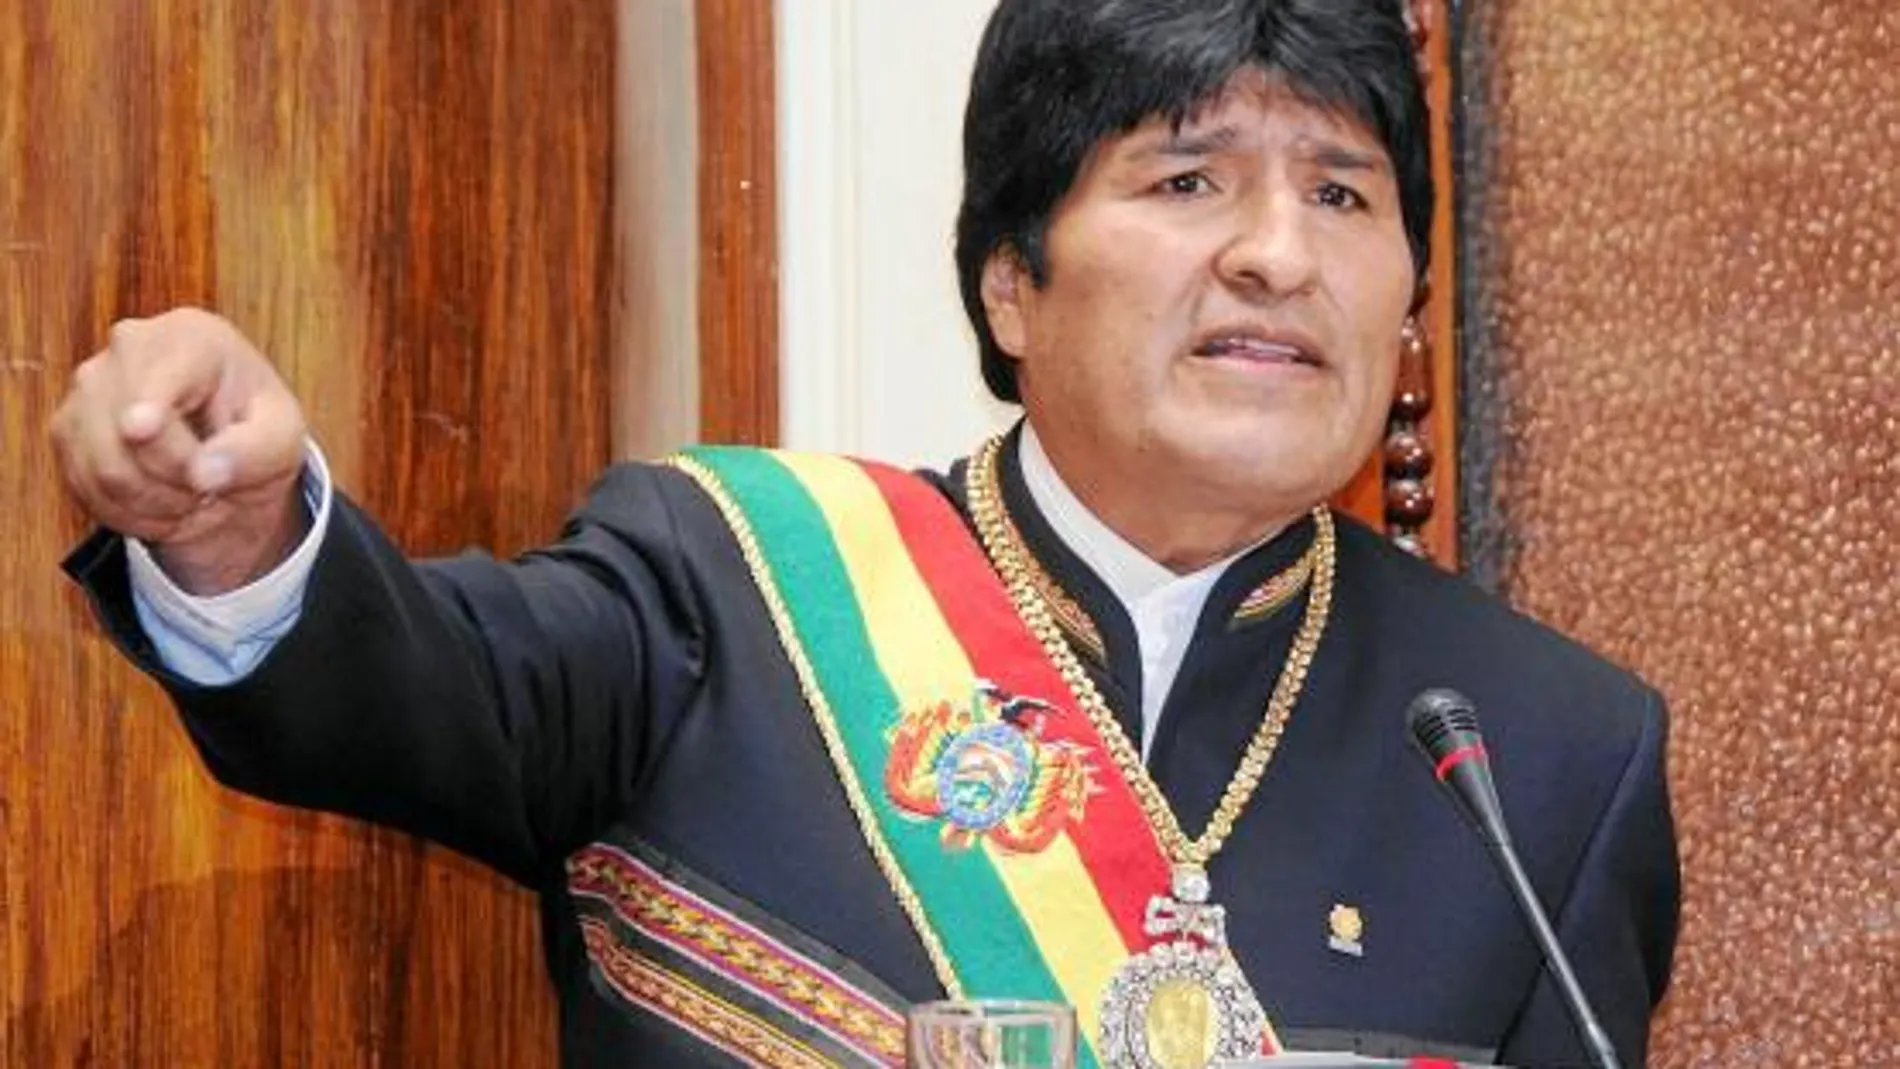 NUEVA YORK- Cuando el presidente de Bolivia, Evo Morales, sacó de su bolsillo una hoja de coca durante su discurso en Naciones Unidas en 2006, pocas delegaciones del resto de países presentes en aquella Asamblea General le tomaron en serio. Entonces, Mor